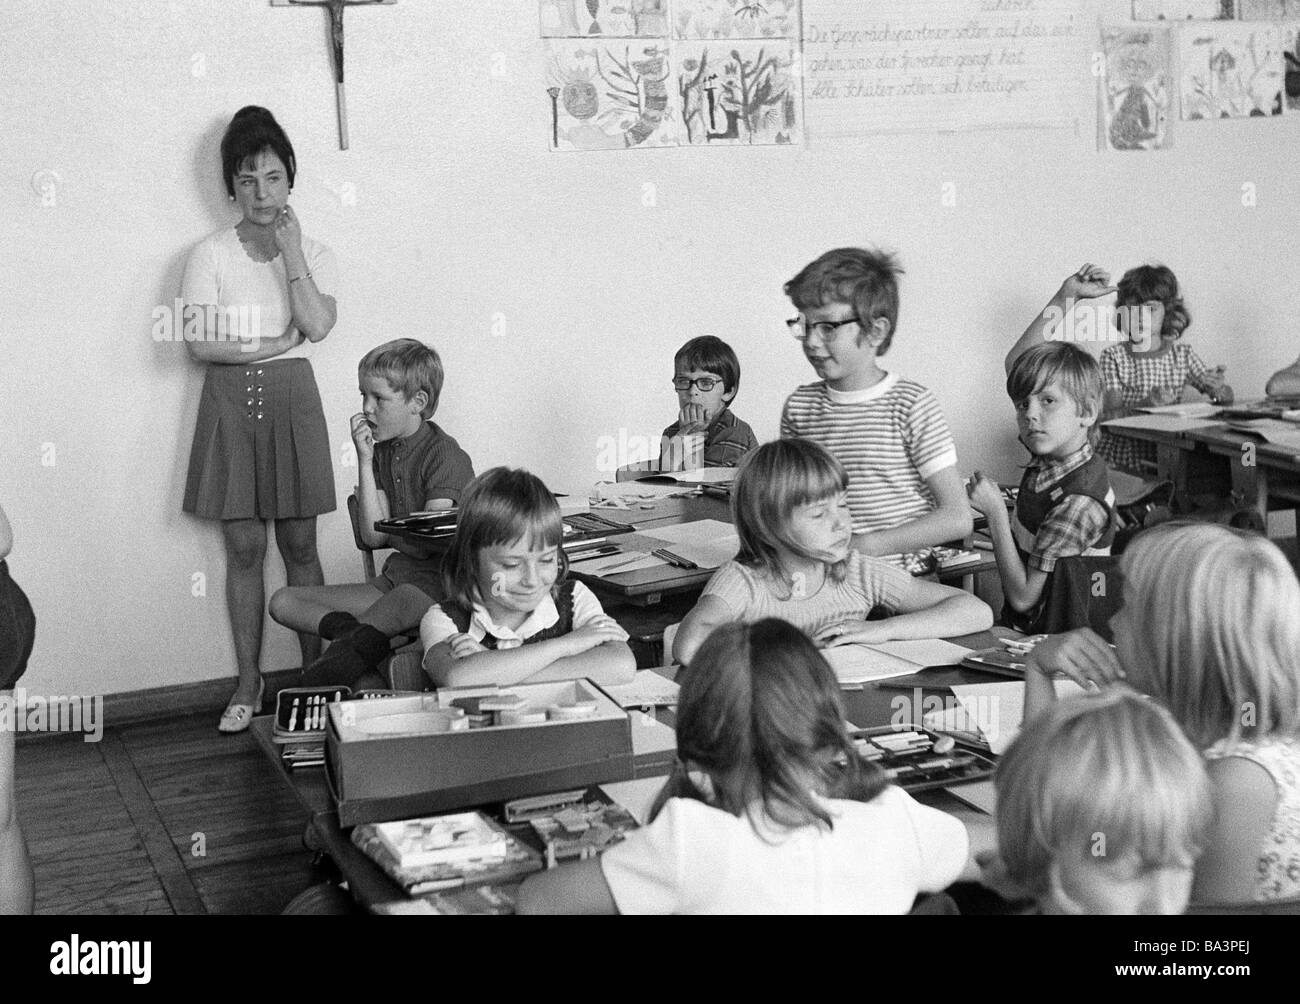 Années 70, photo en noir et blanc, l'édification, l'école, des écoliers et des écolières dans une classe d'école pendant les cours, l'enseignante, les enfants âgés de 7 à 10 ans Banque D'Images